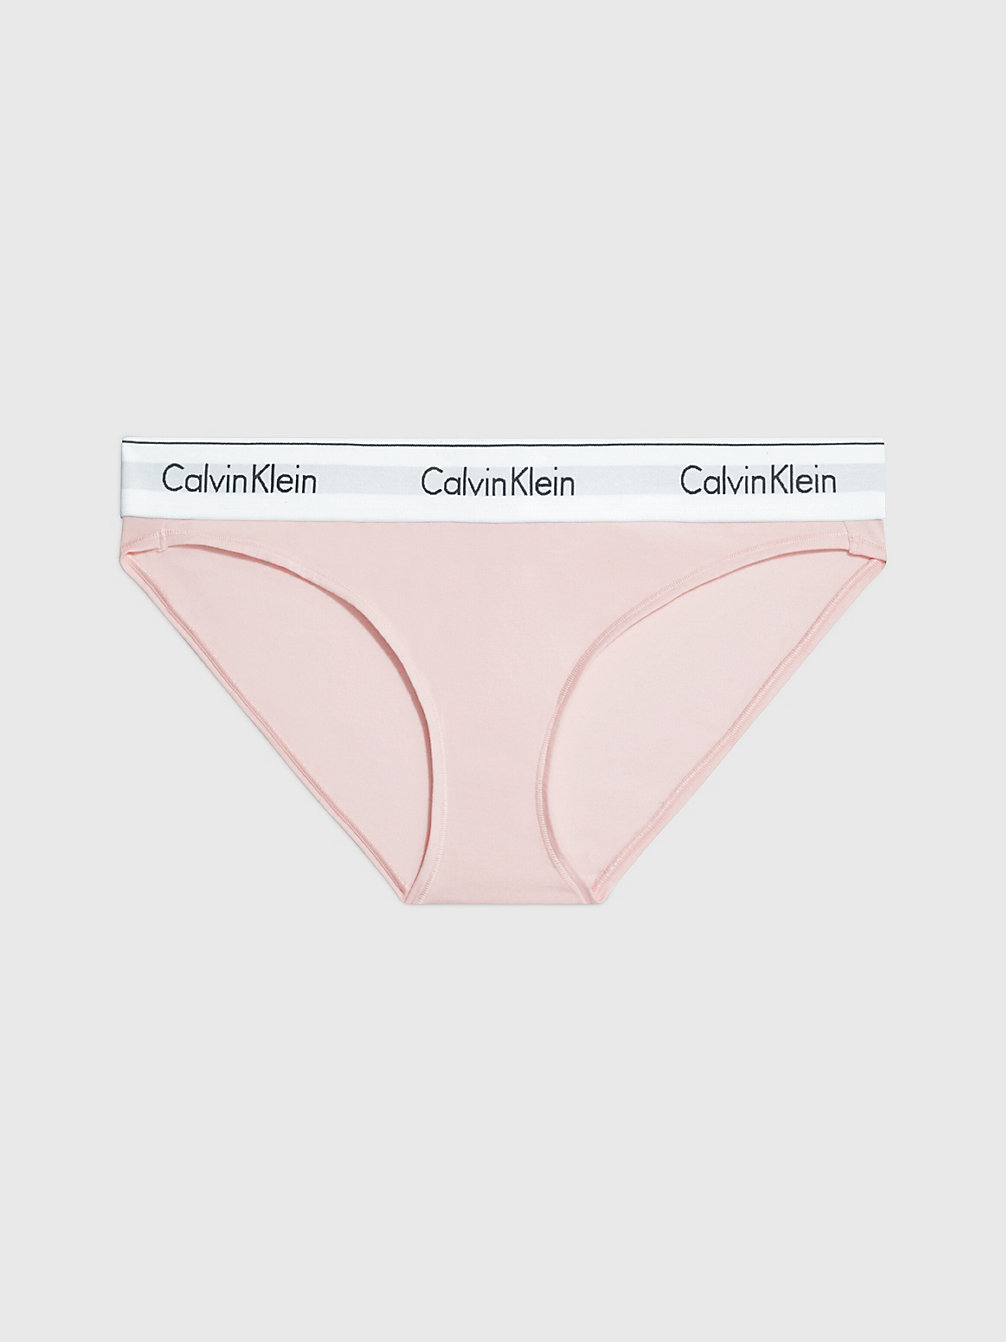 NYMPHS THIGH Bikini Brief - Modern Cotton undefined women Calvin Klein